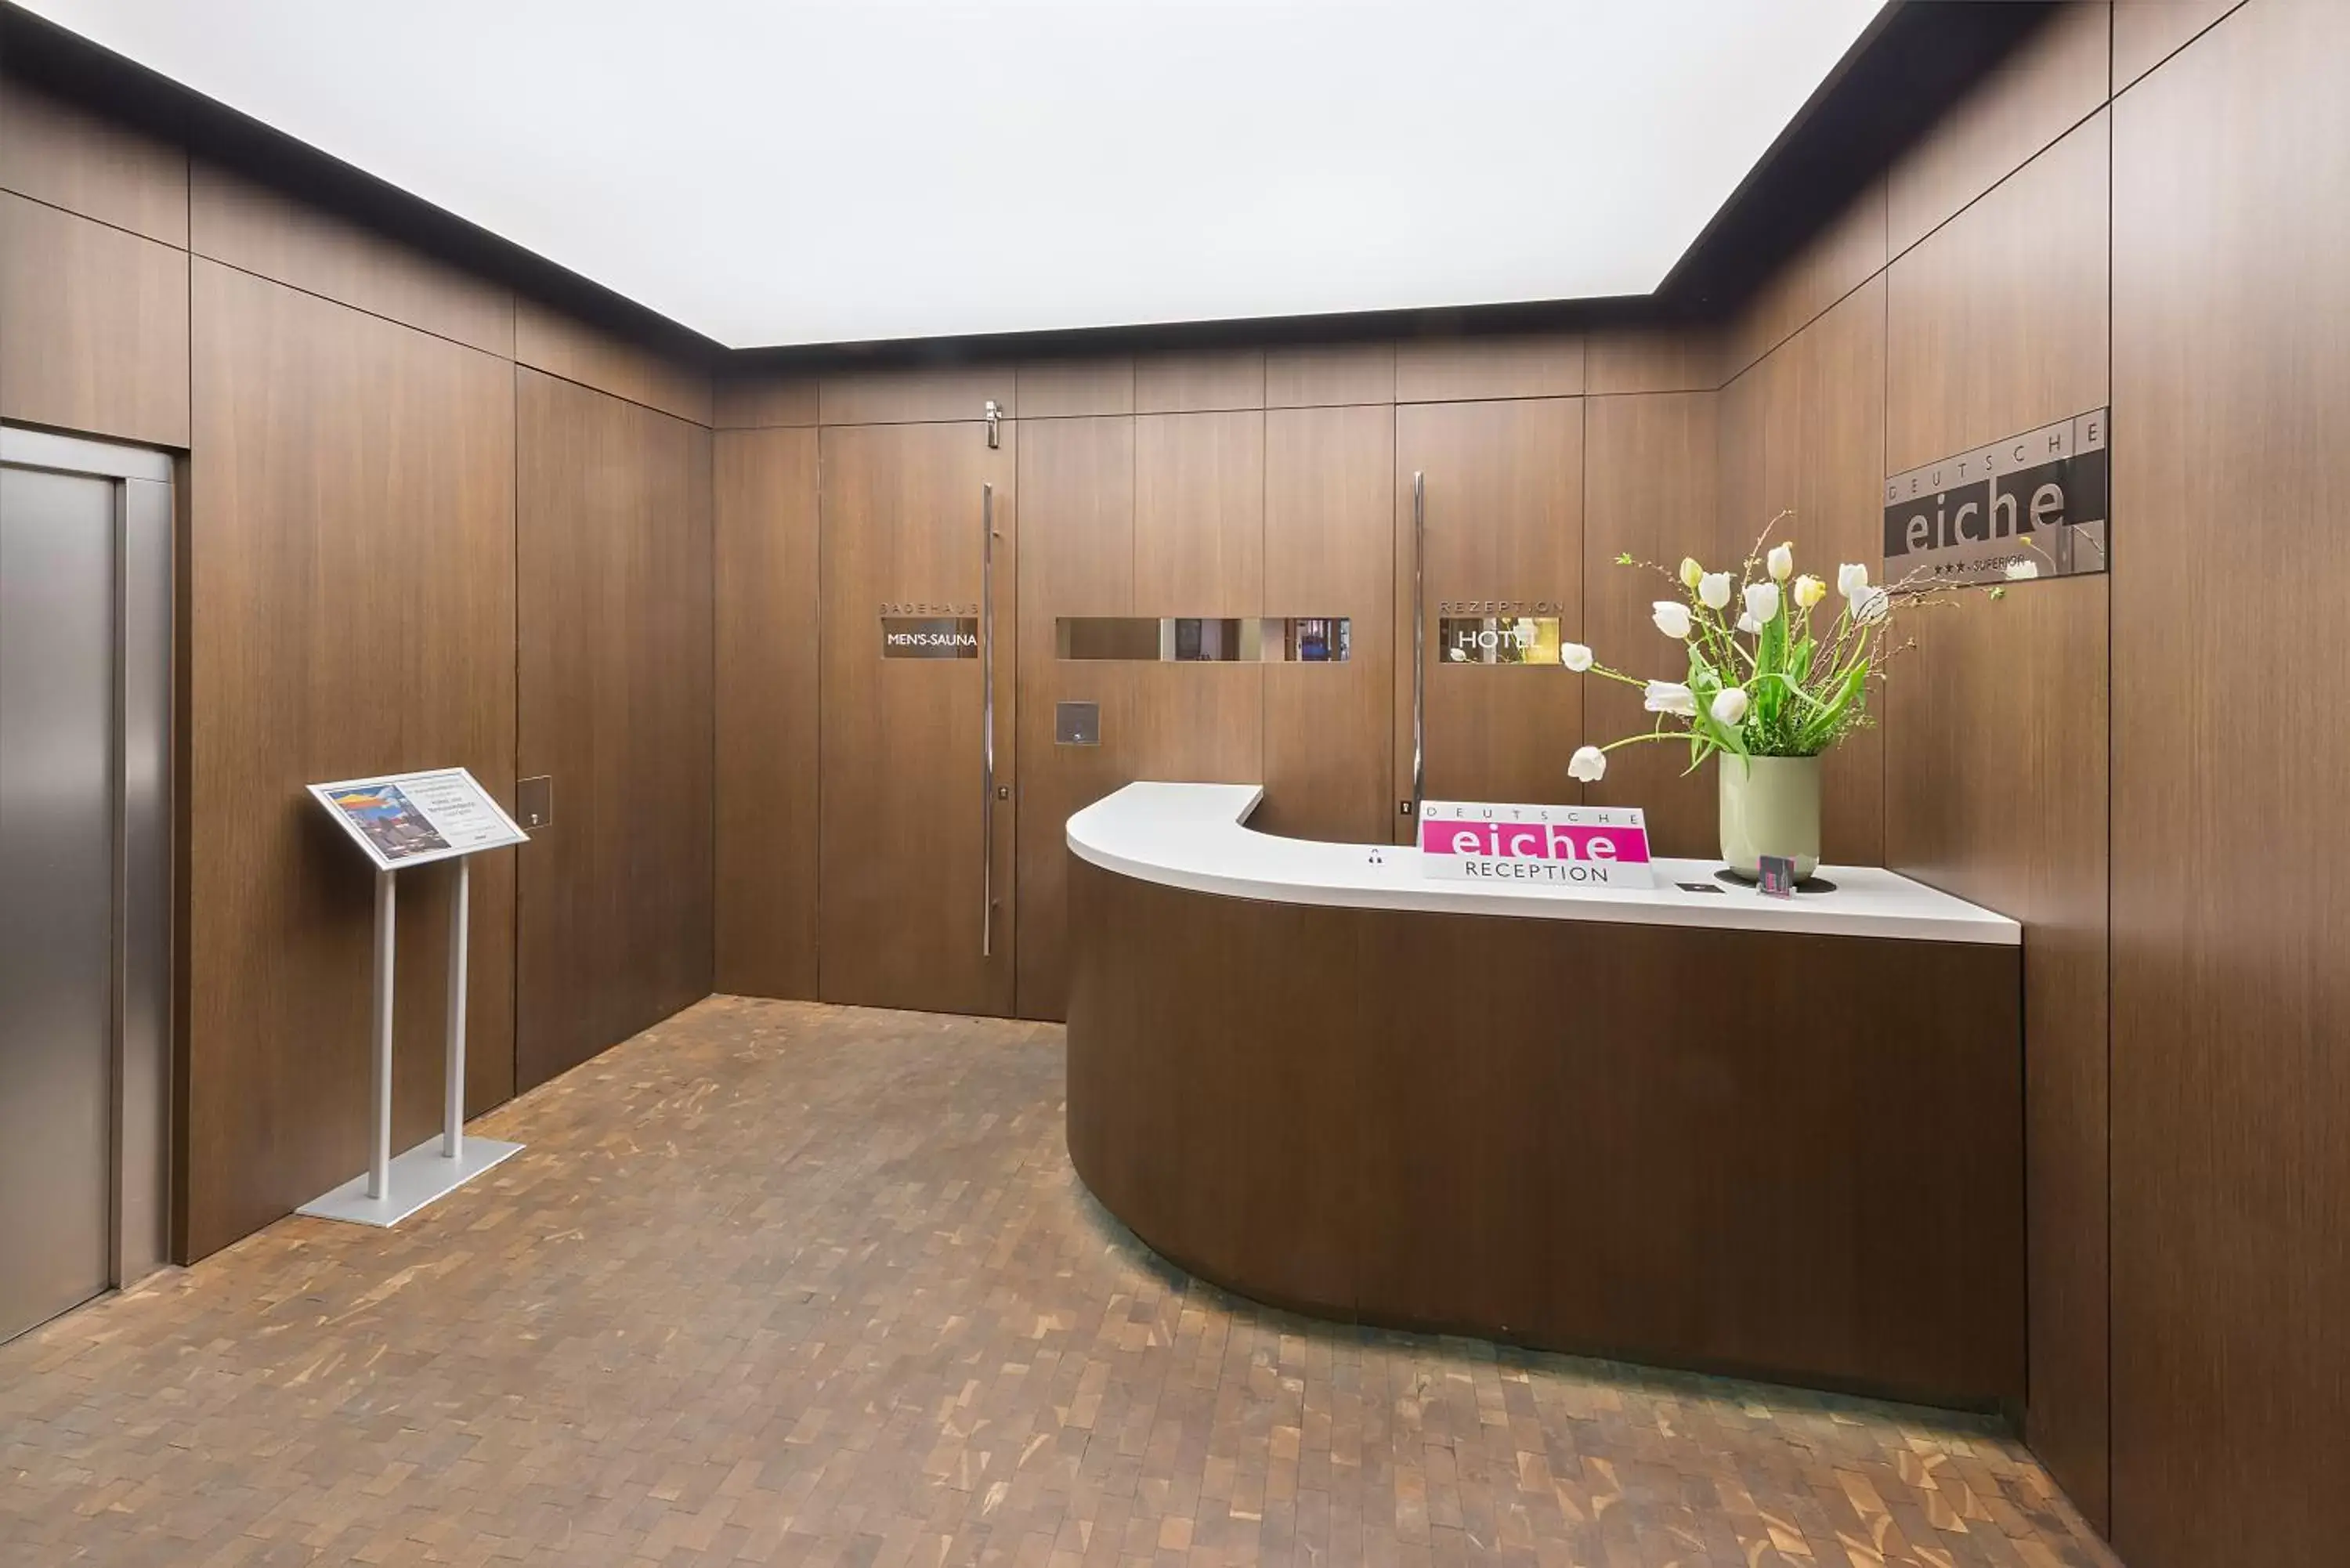 Lobby or reception, Bathroom in Hotel Deutsche Eiche